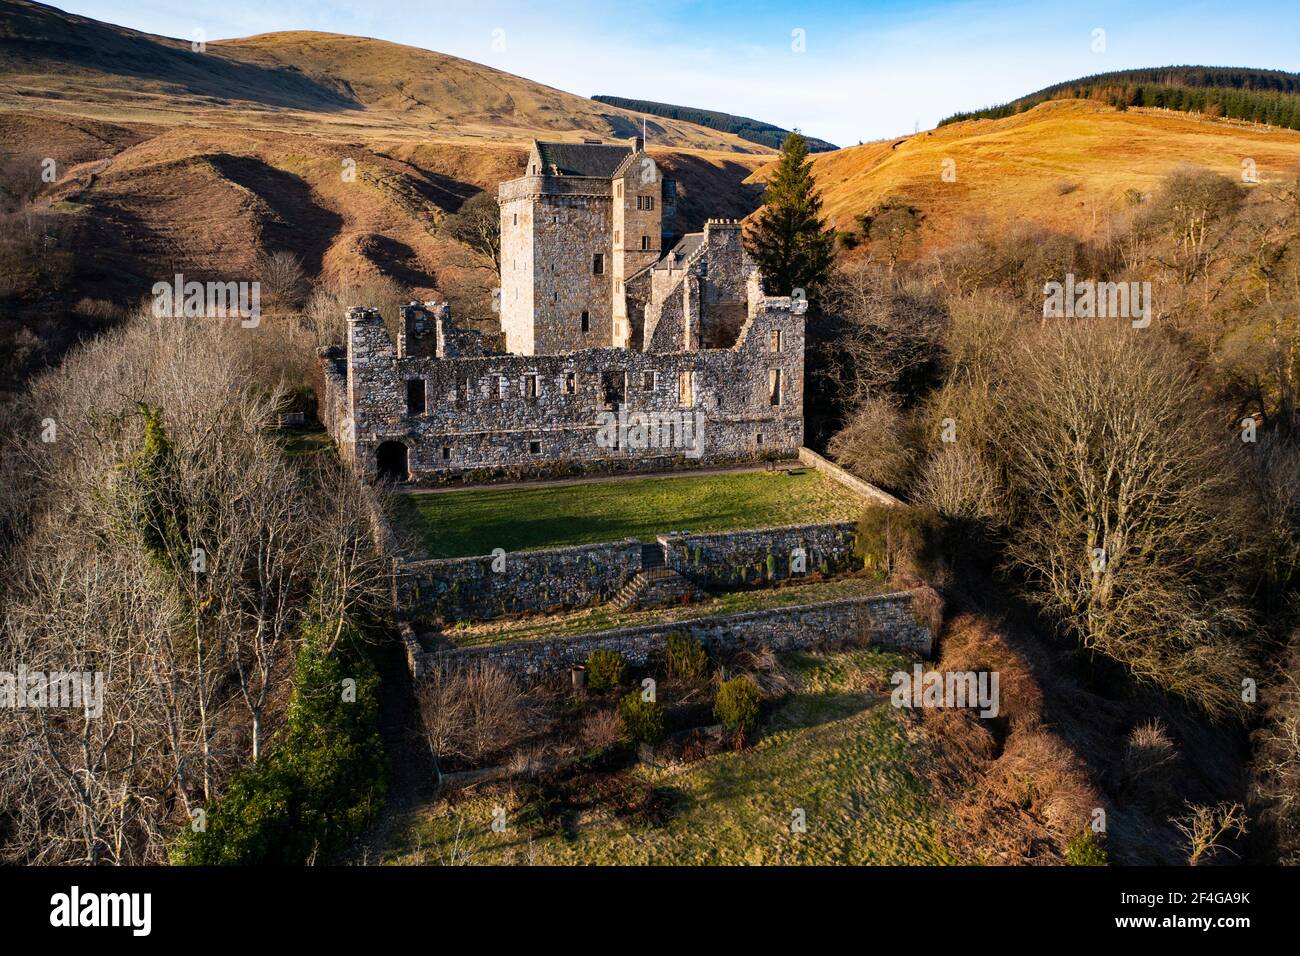 Château Campbell château médiéval situé au-dessus de la ville de Dollar, Clackmannanshire, centre de l'Écosse, Royaume-Uni (fermé pendant l'enfermement de Covid-19) Banque D'Images